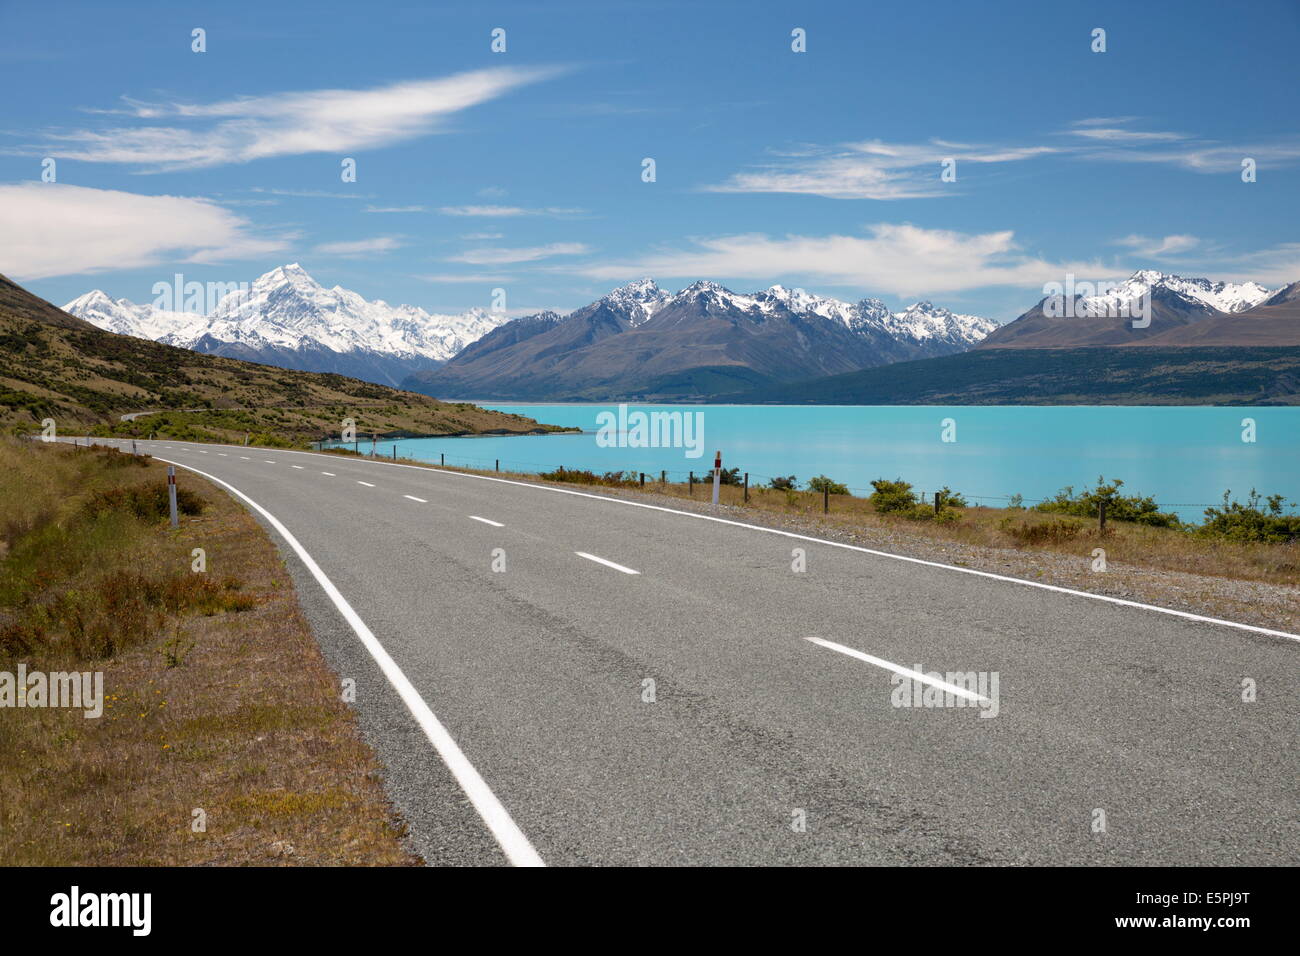 Le Mont Cook et le Lac Pukaki avec vide Mount Cook Road, Mount Cook National Park, site de l'UNESCO, la région de Canterbury, Nouvelle-Zélande Banque D'Images